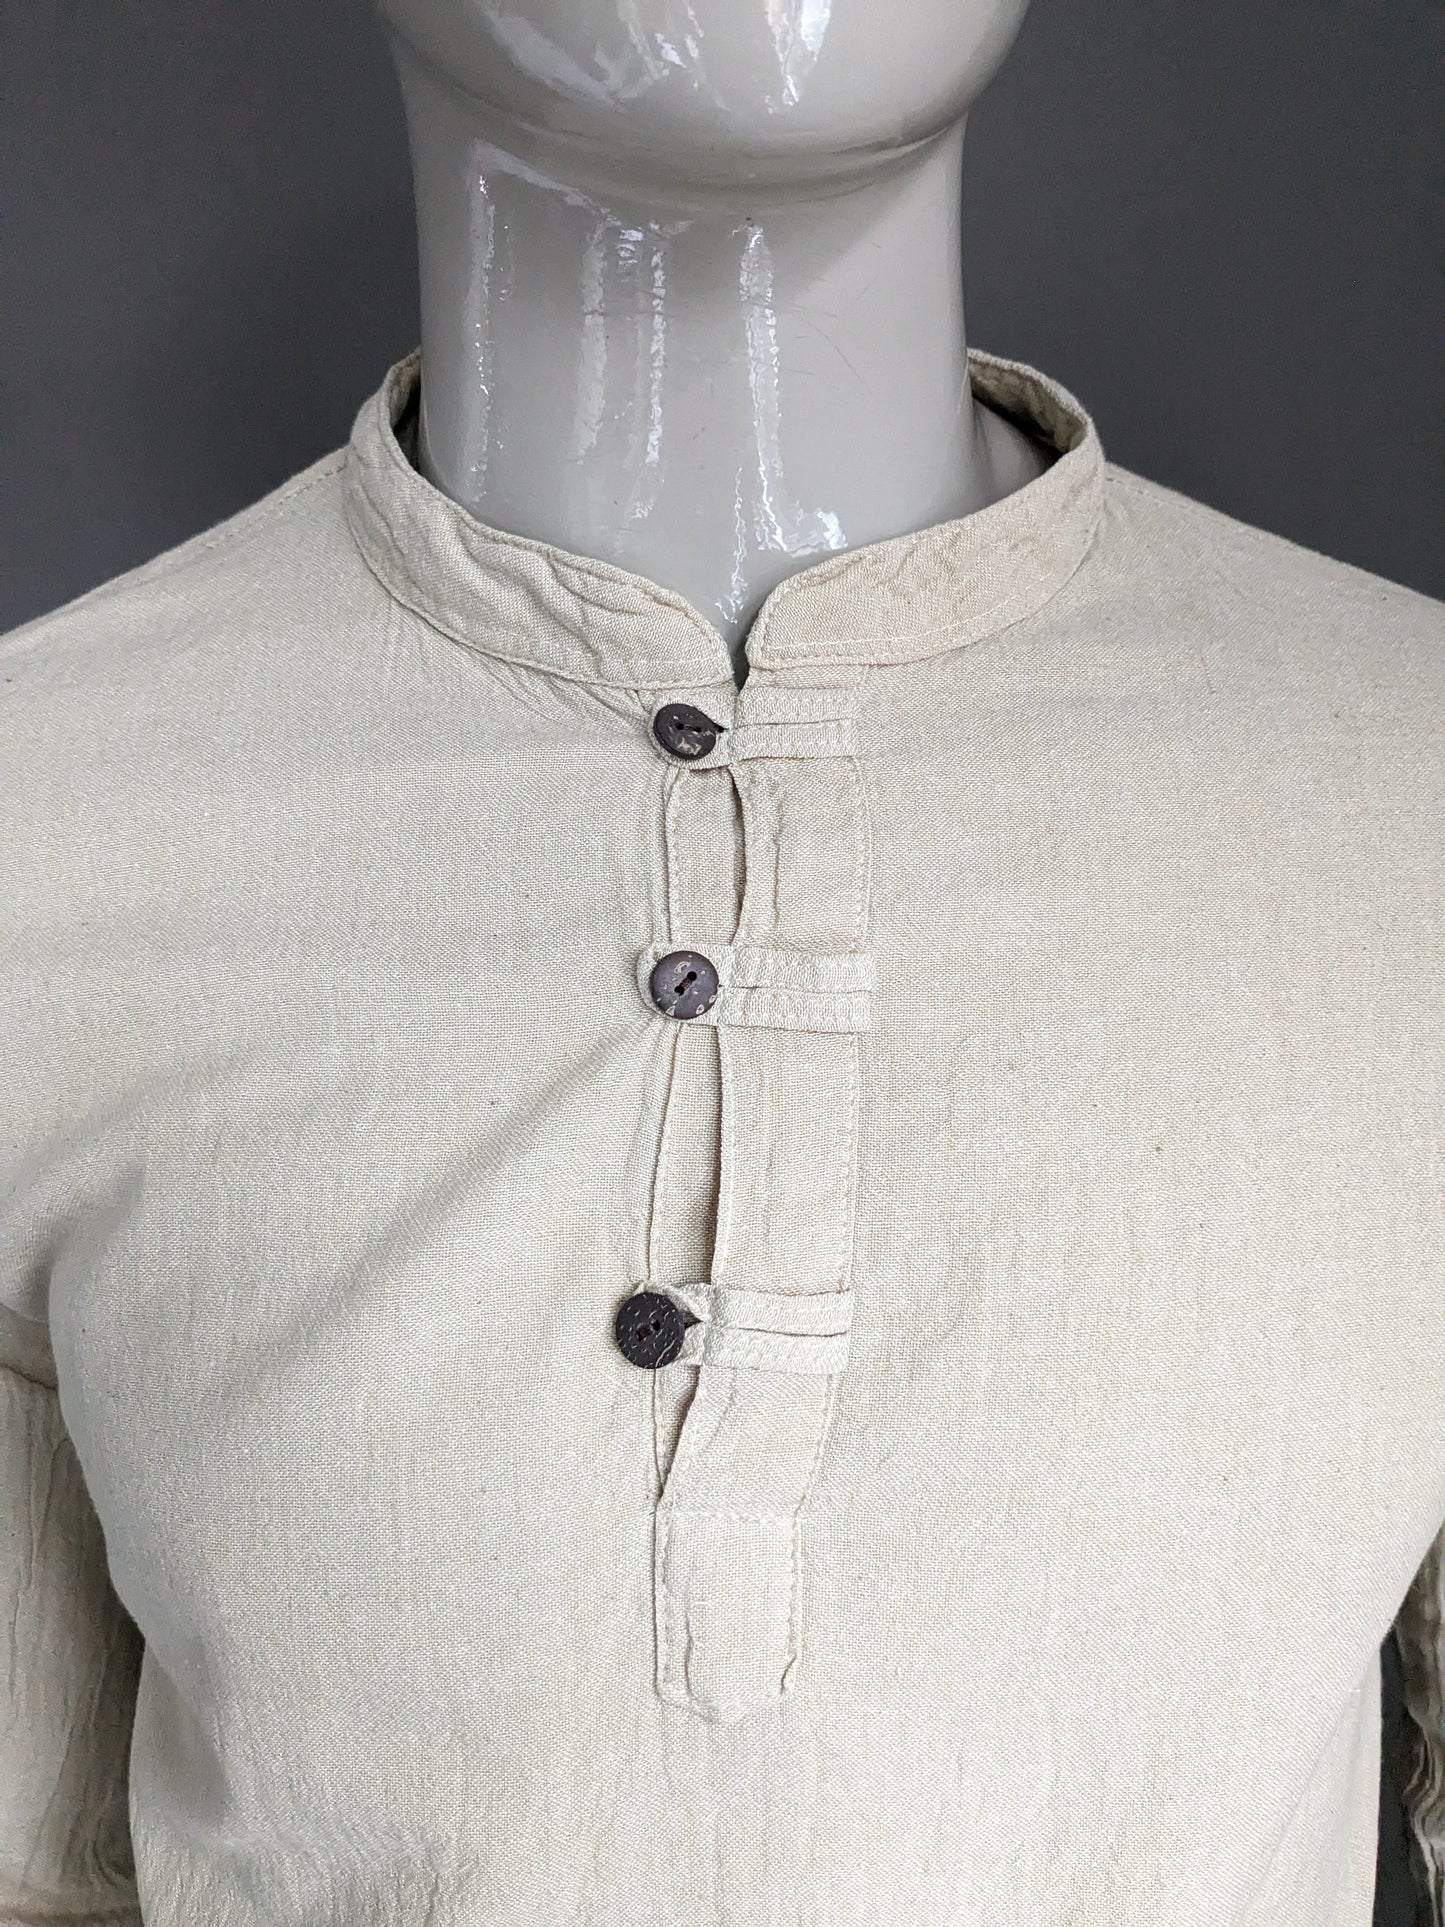 Chemise vintage / manche longue longslee avec boutons et collier mao / surélevé. Brun clair. Taille M.